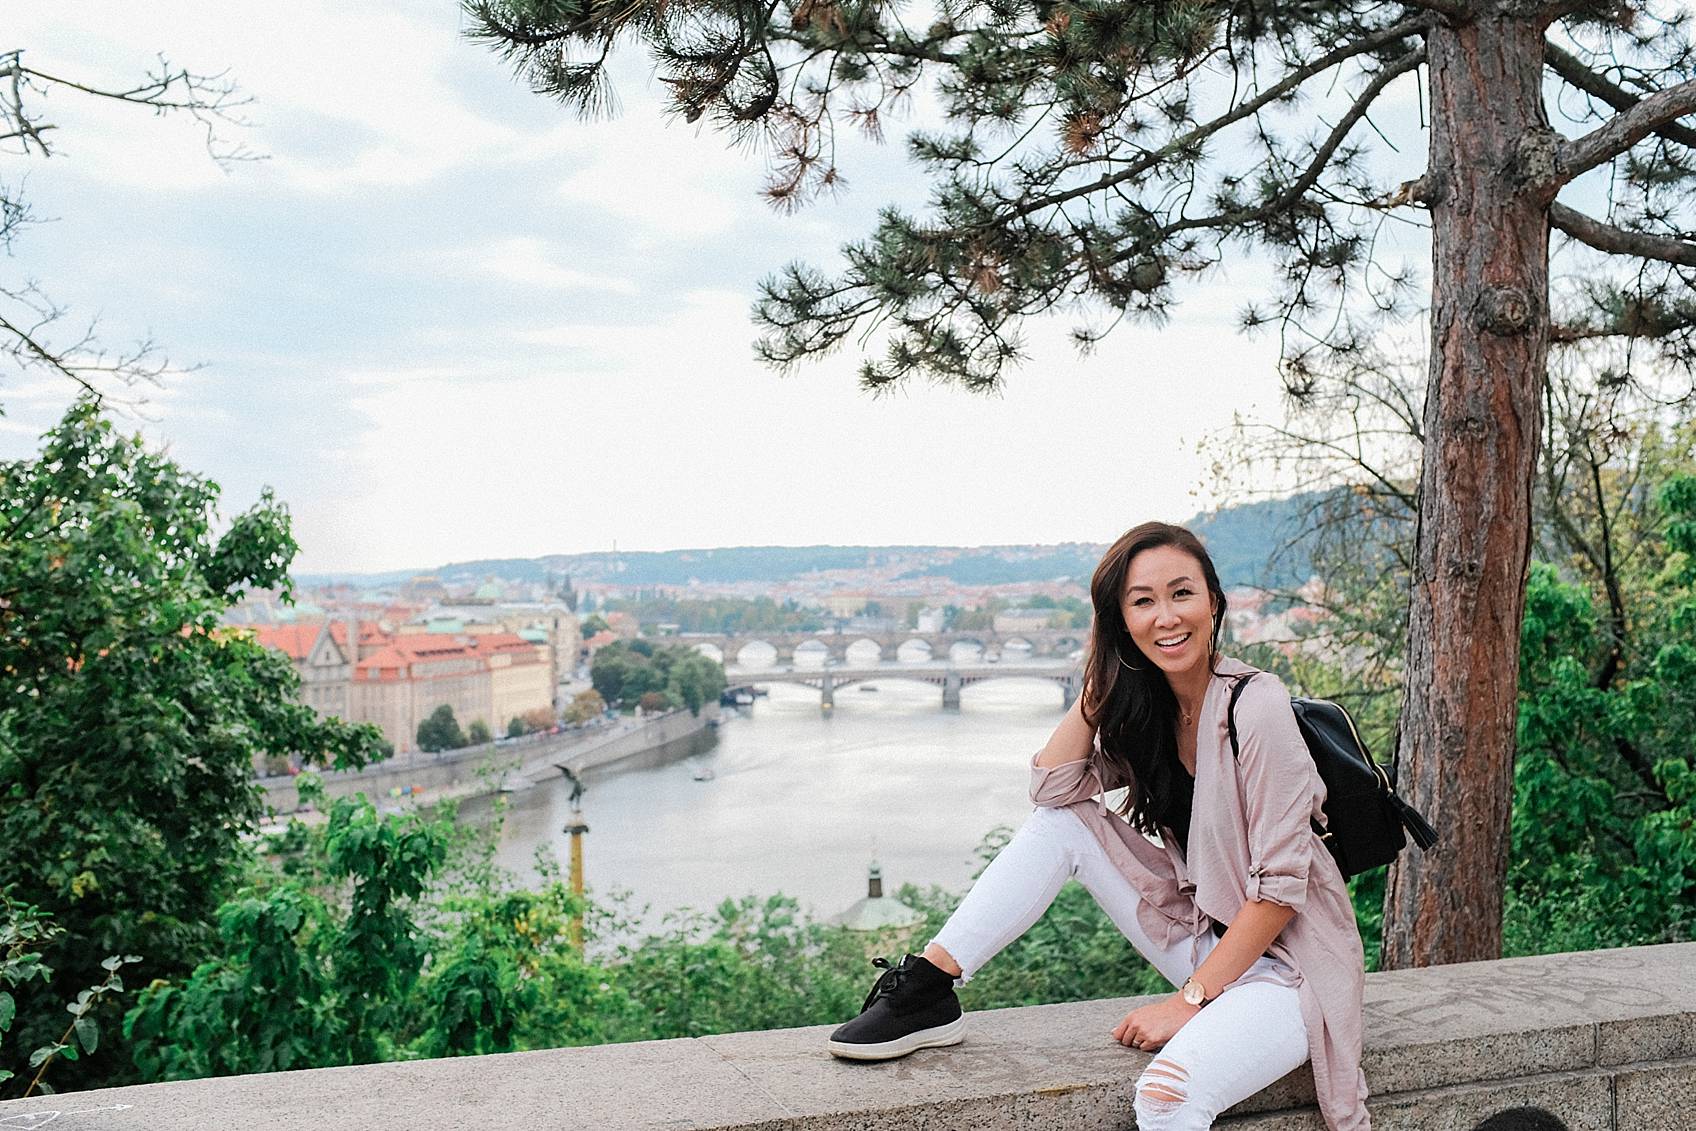 Photo guide to Prague: Letna Park